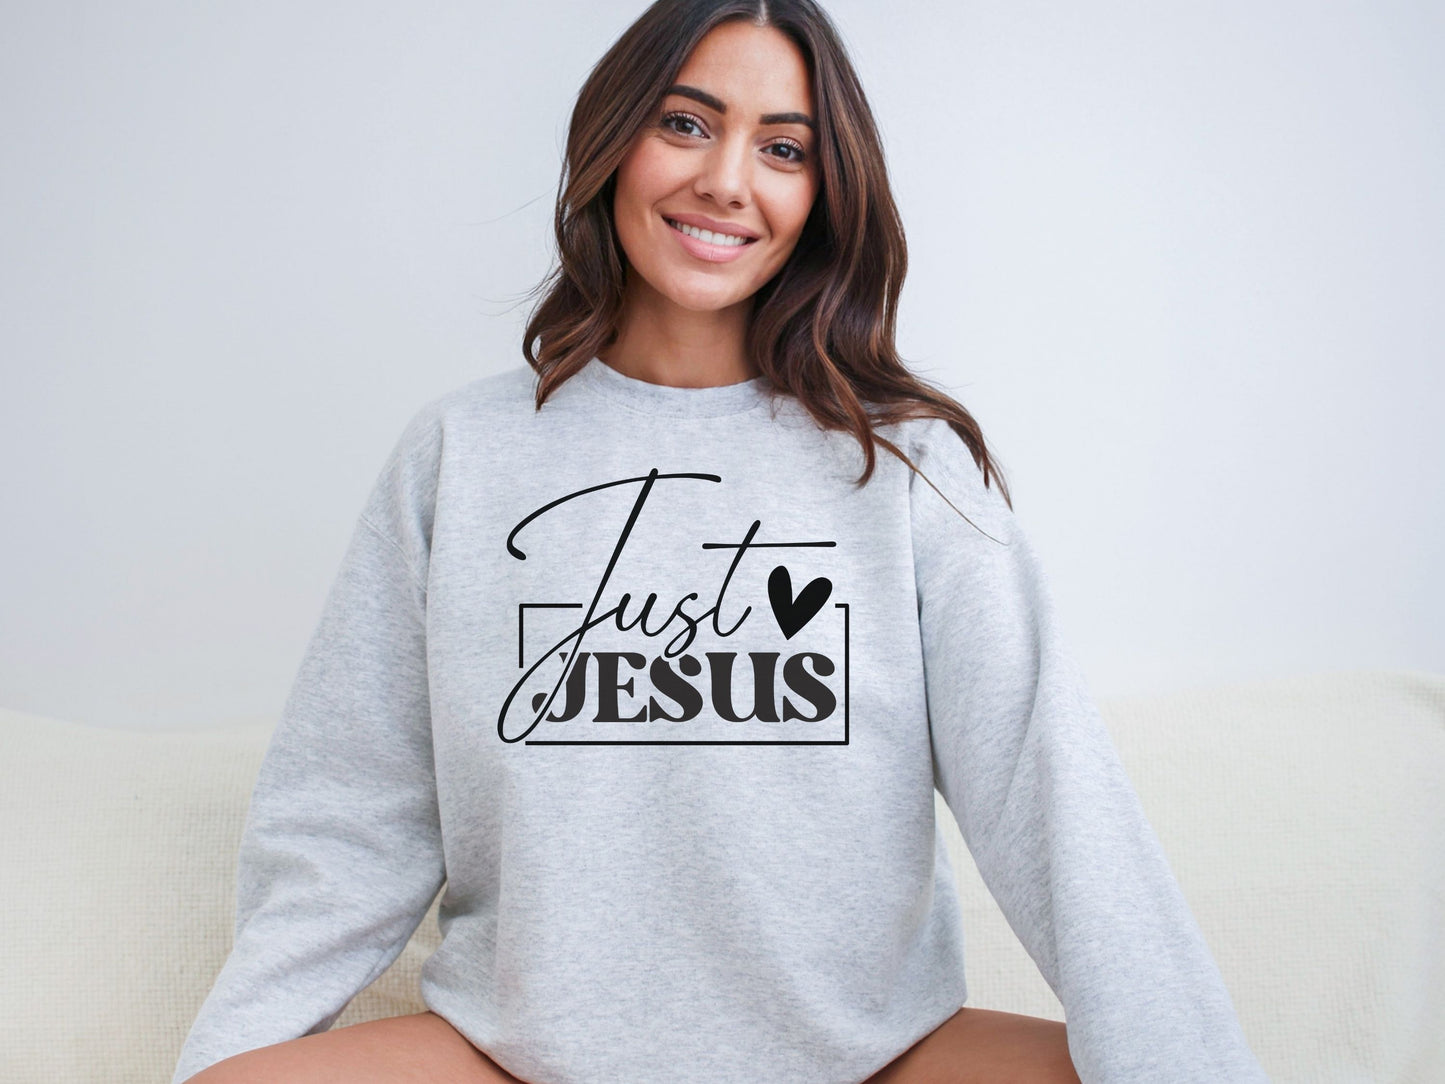 Just Jesus Women's Easter Sweatshirt